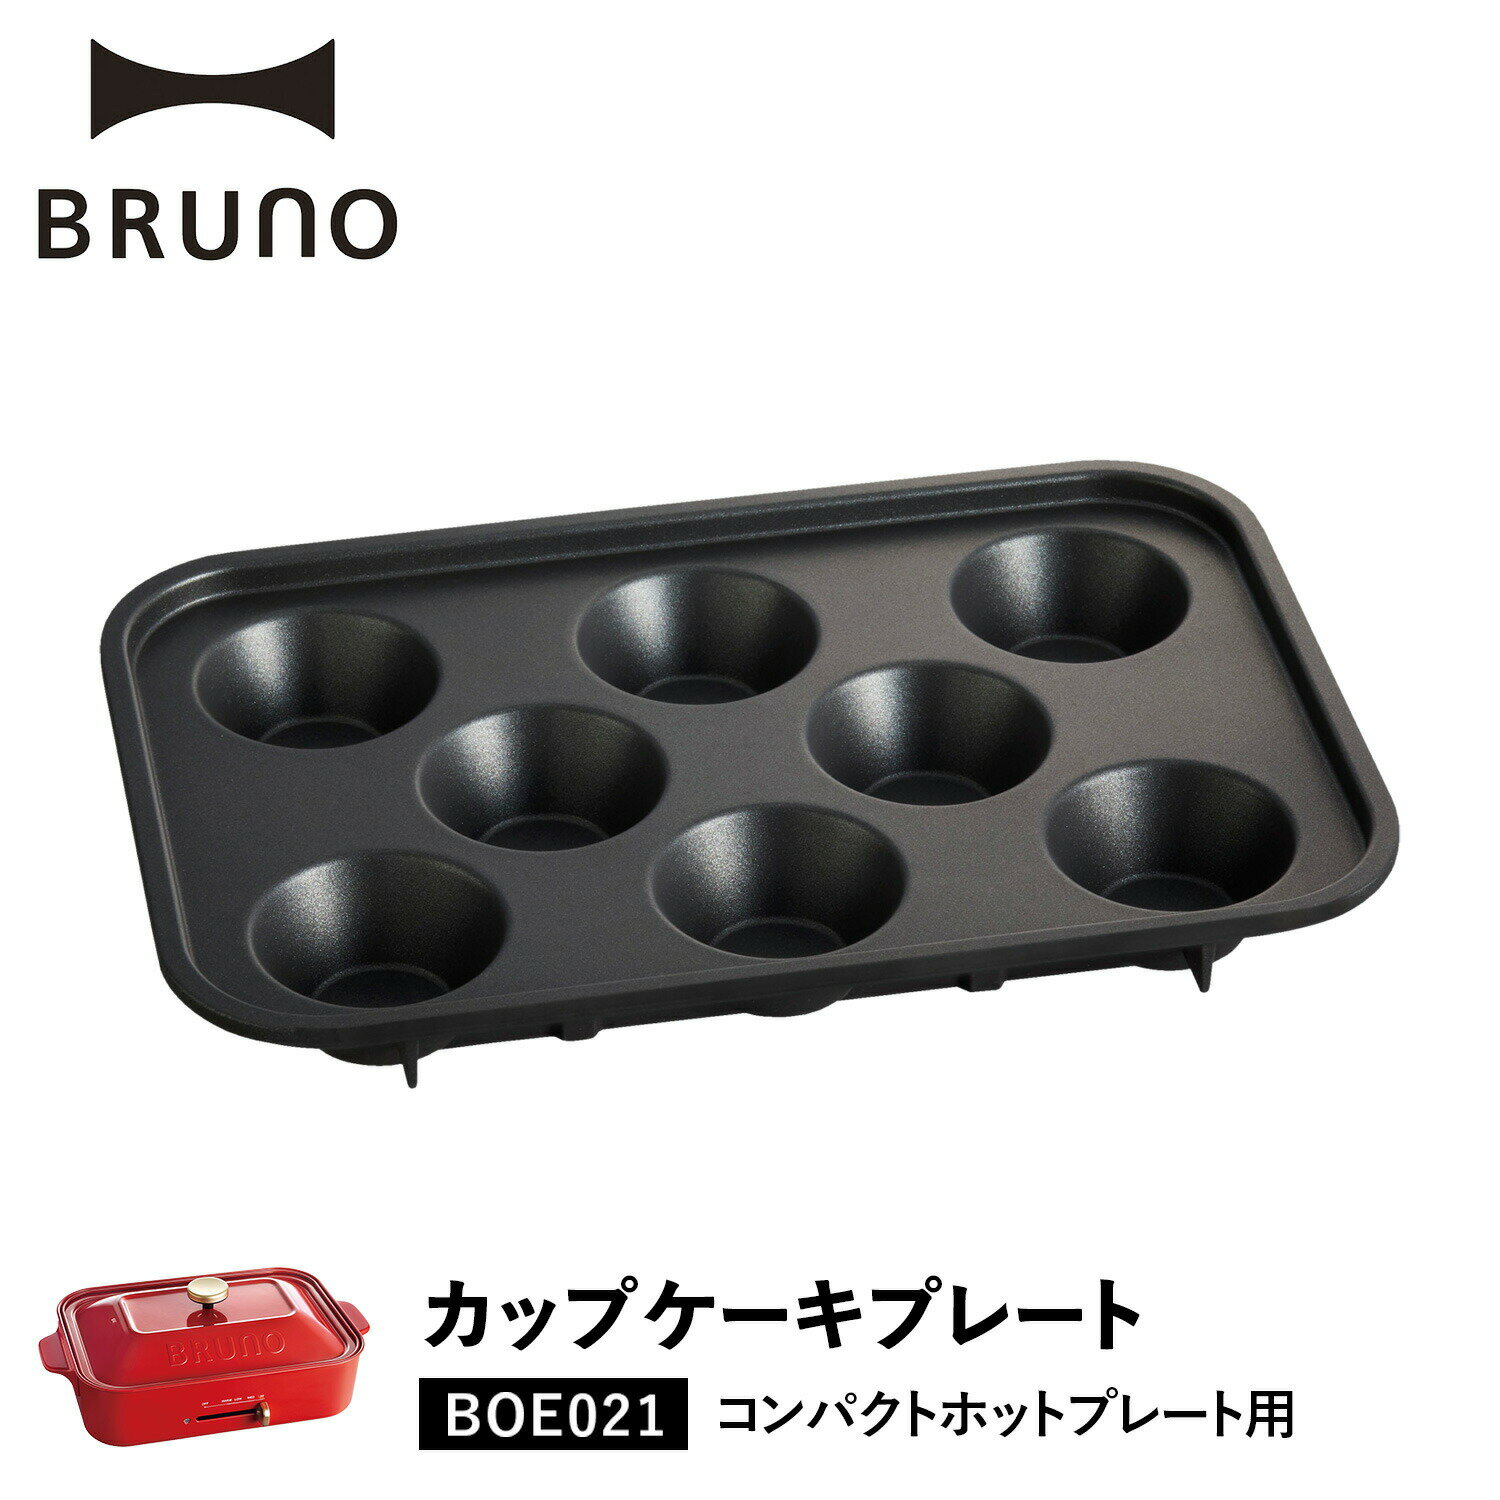 BRUNO BOE021-CAKE ブルーノ コンパクトホットプレート用 カップケーキプレート オプション プレート 小型 小さい 料理 パーティ キッチン